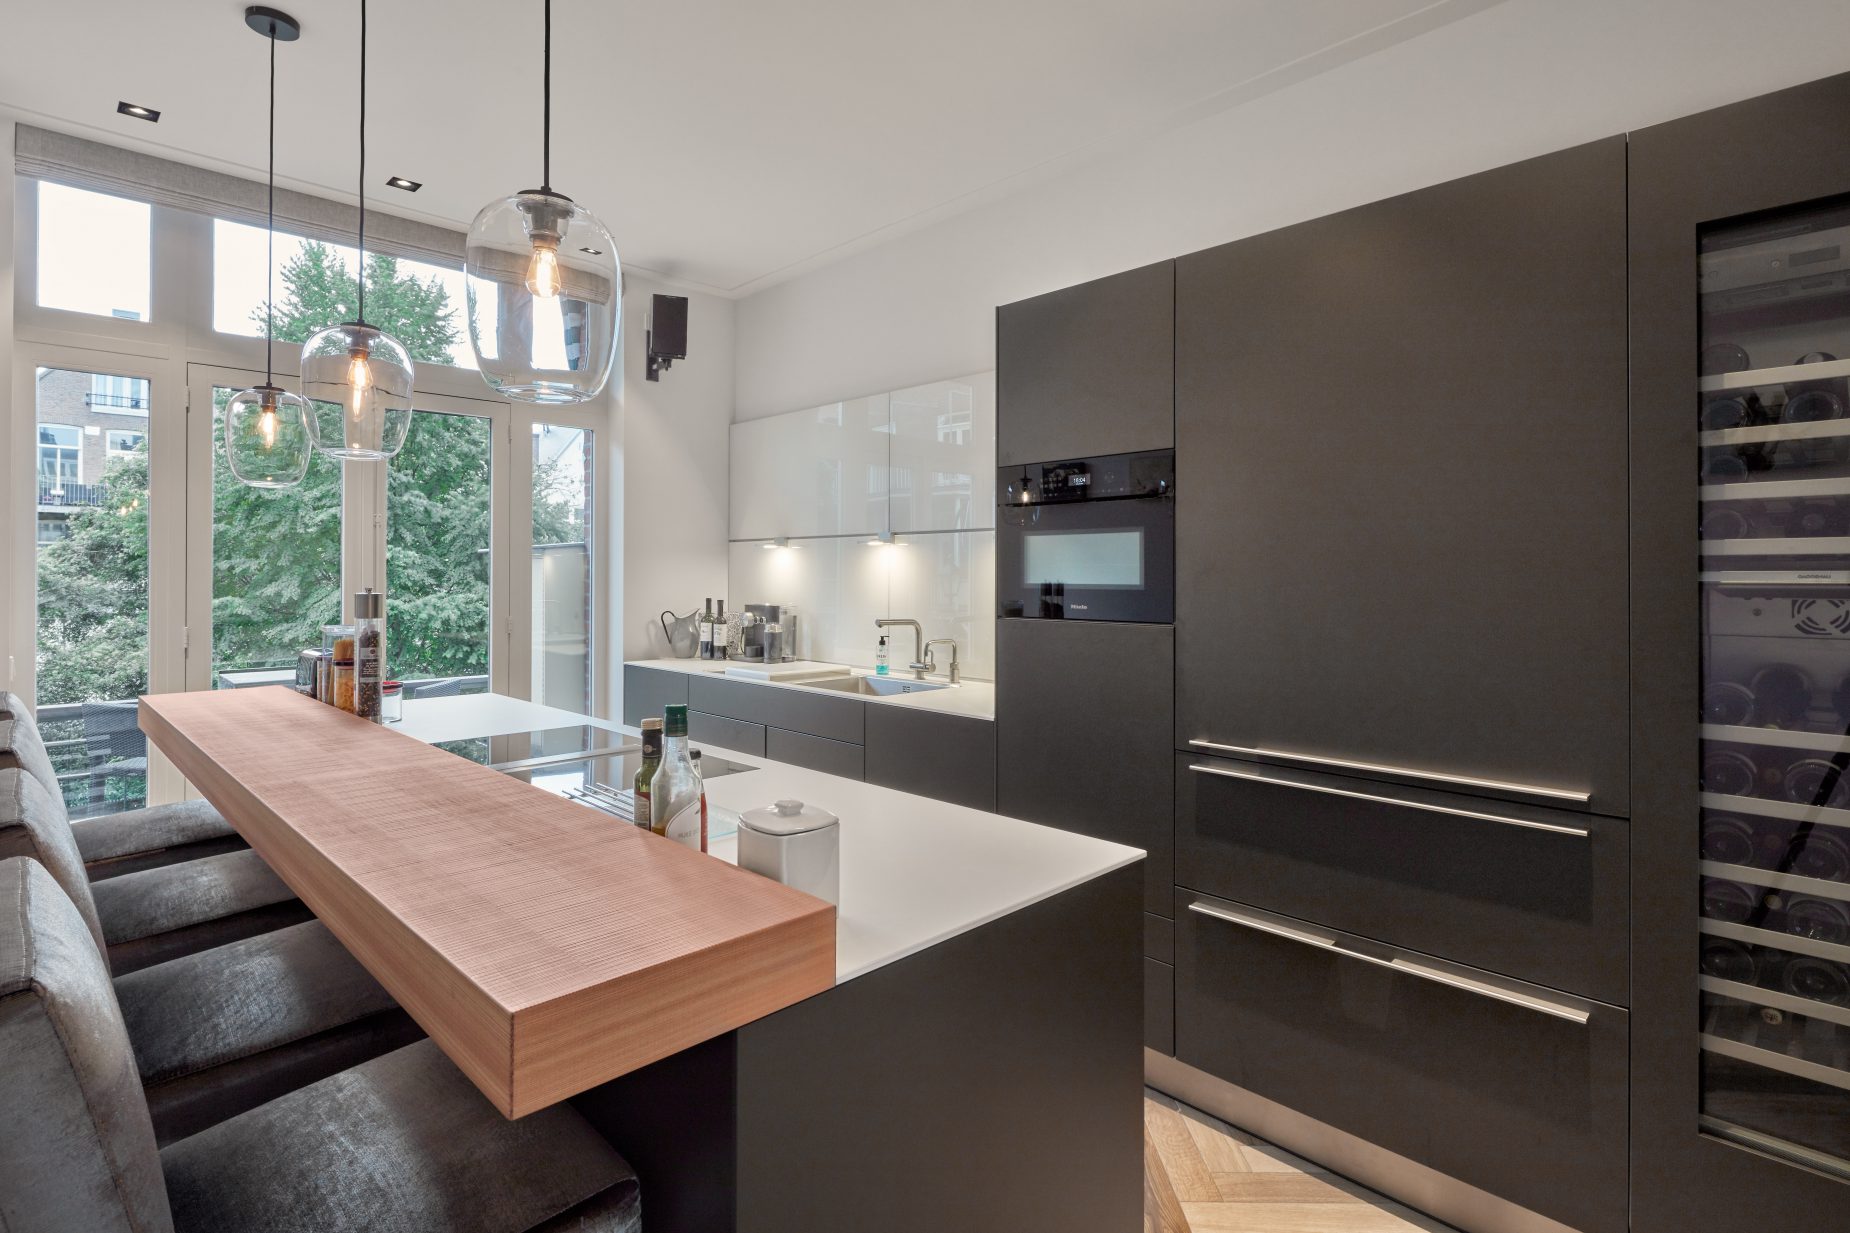 Keuken van Buthaup ontwerp op maat gemaakt door architect Maxim Winkelaar te Amsterdam.